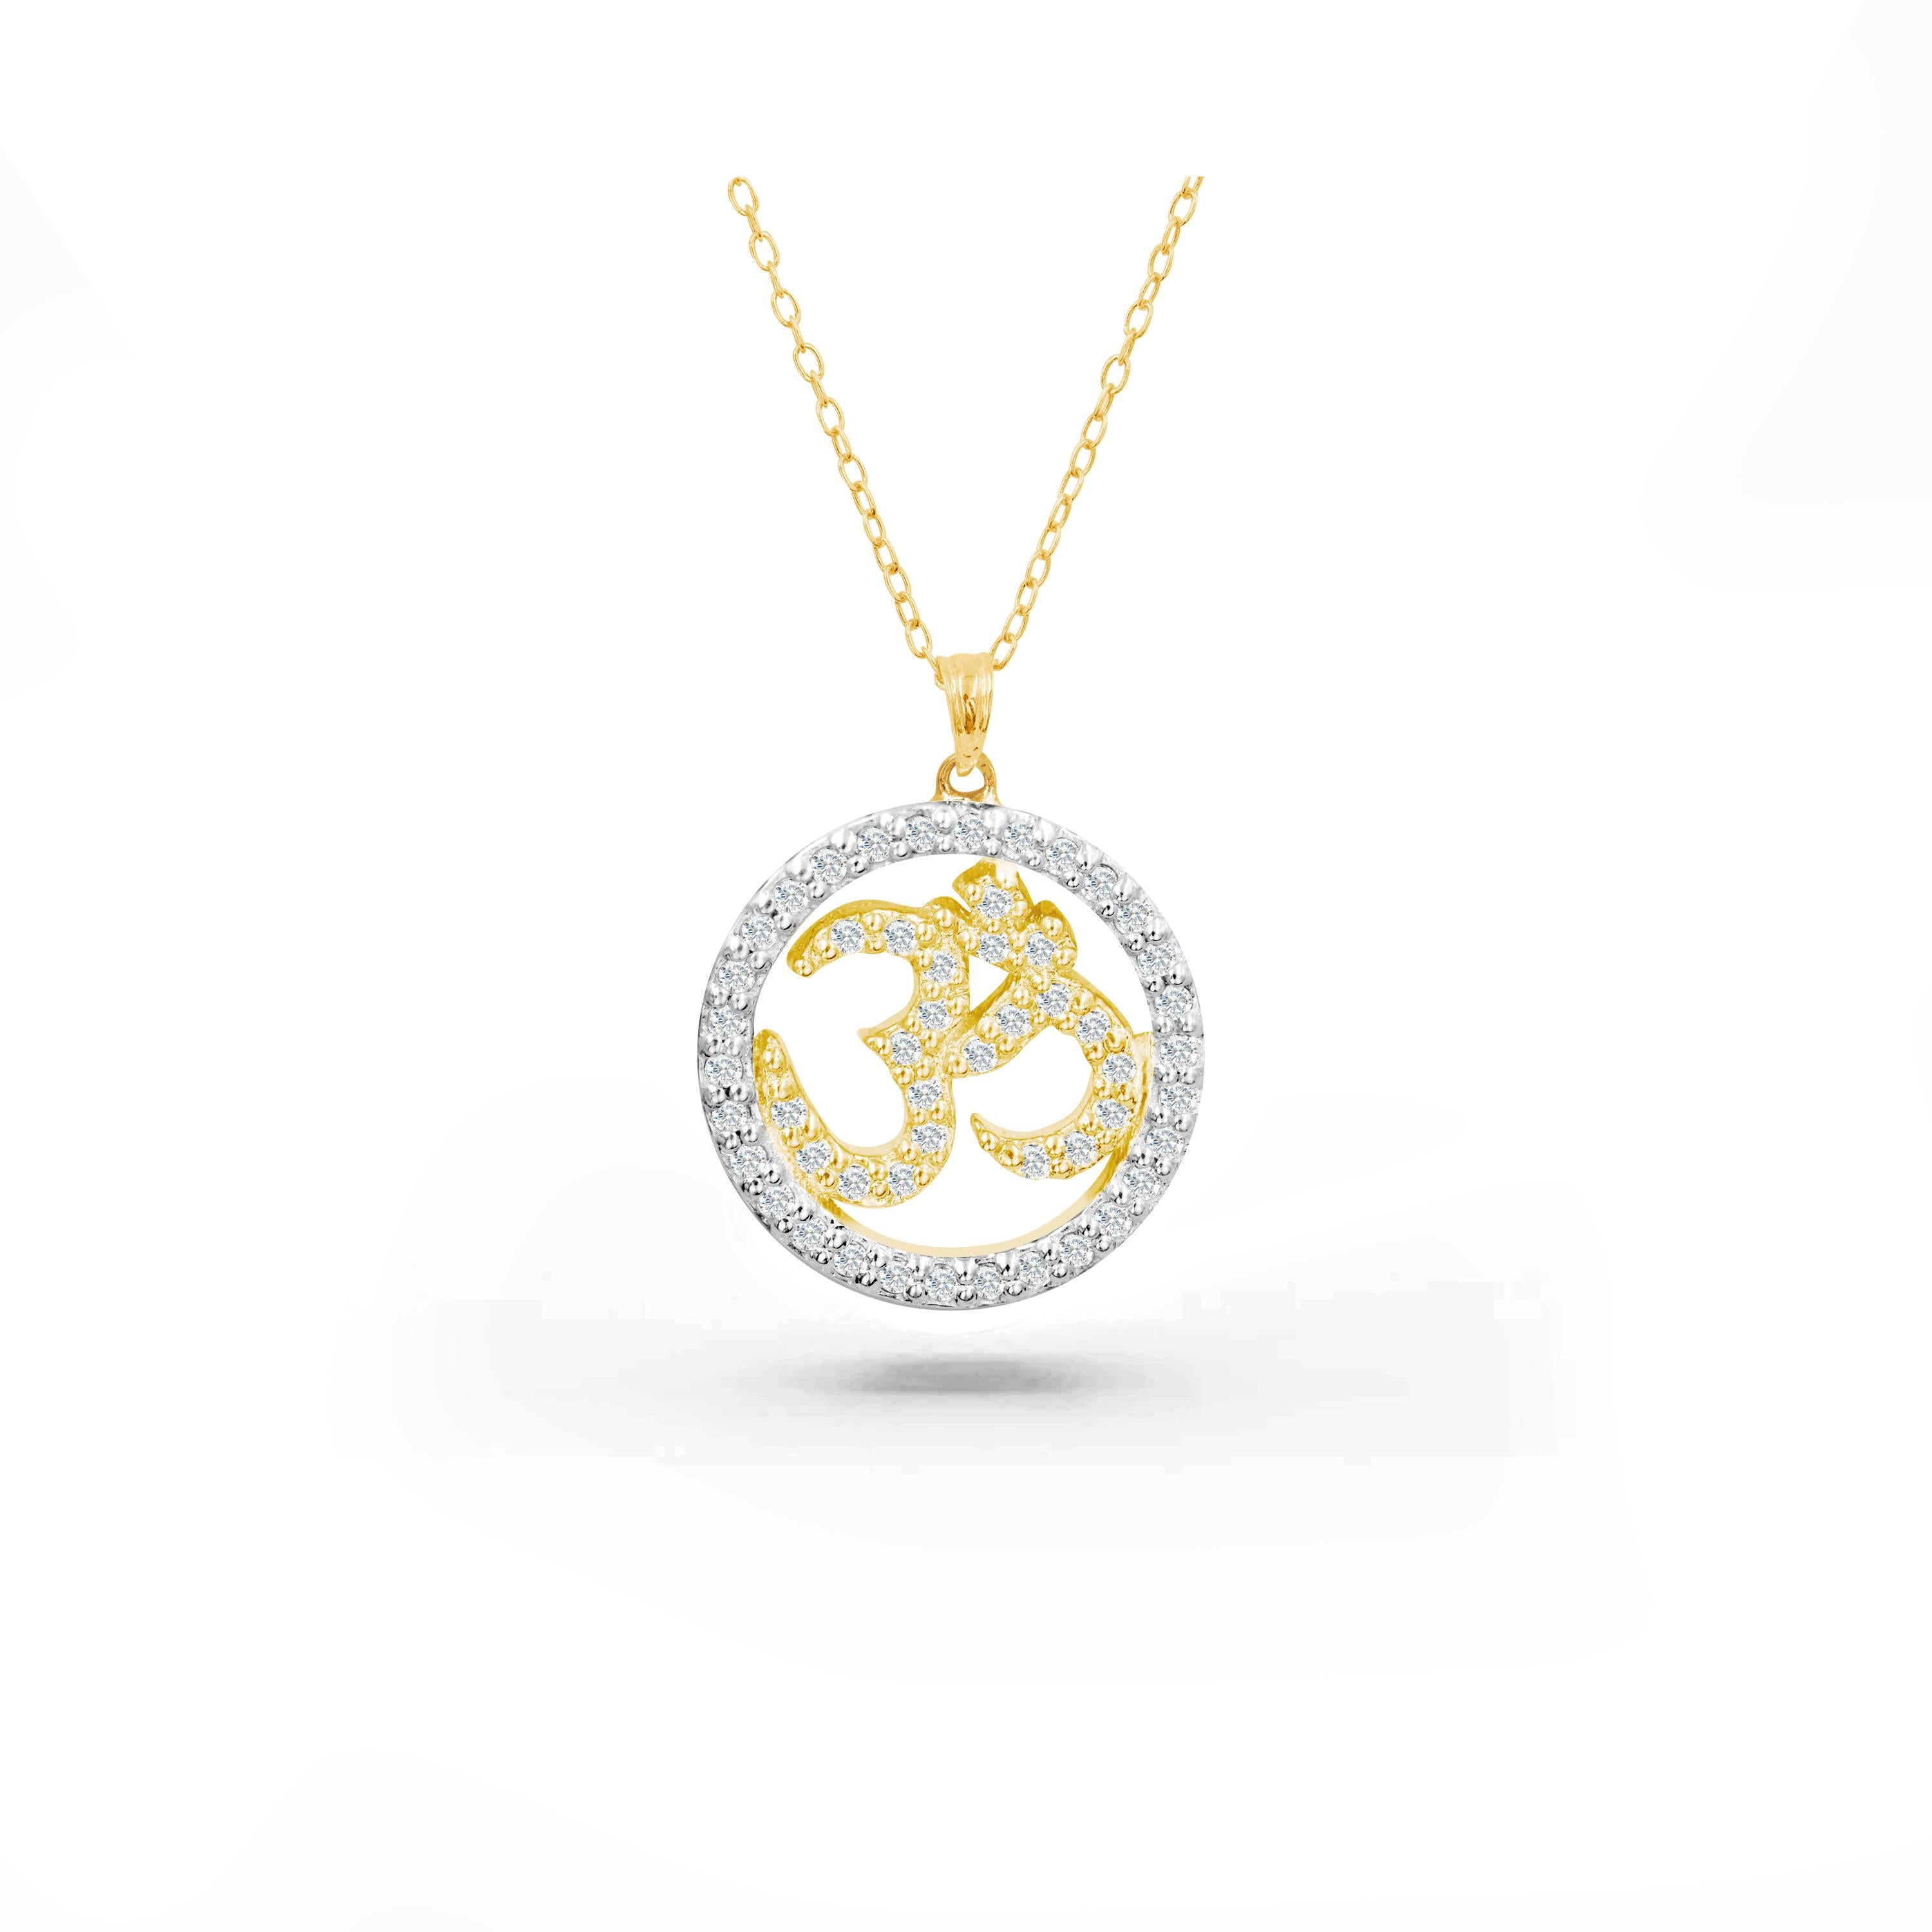 Le collier en diamants OM Halo, fabriqué à la main, est idéal à porter au quotidien pour apporter paix intérieure et spiritualité. Nous garantissons une qualité de premier ordre avec un diamant de 0,34 carat magnifiquement serti dans ce collier.  Ce